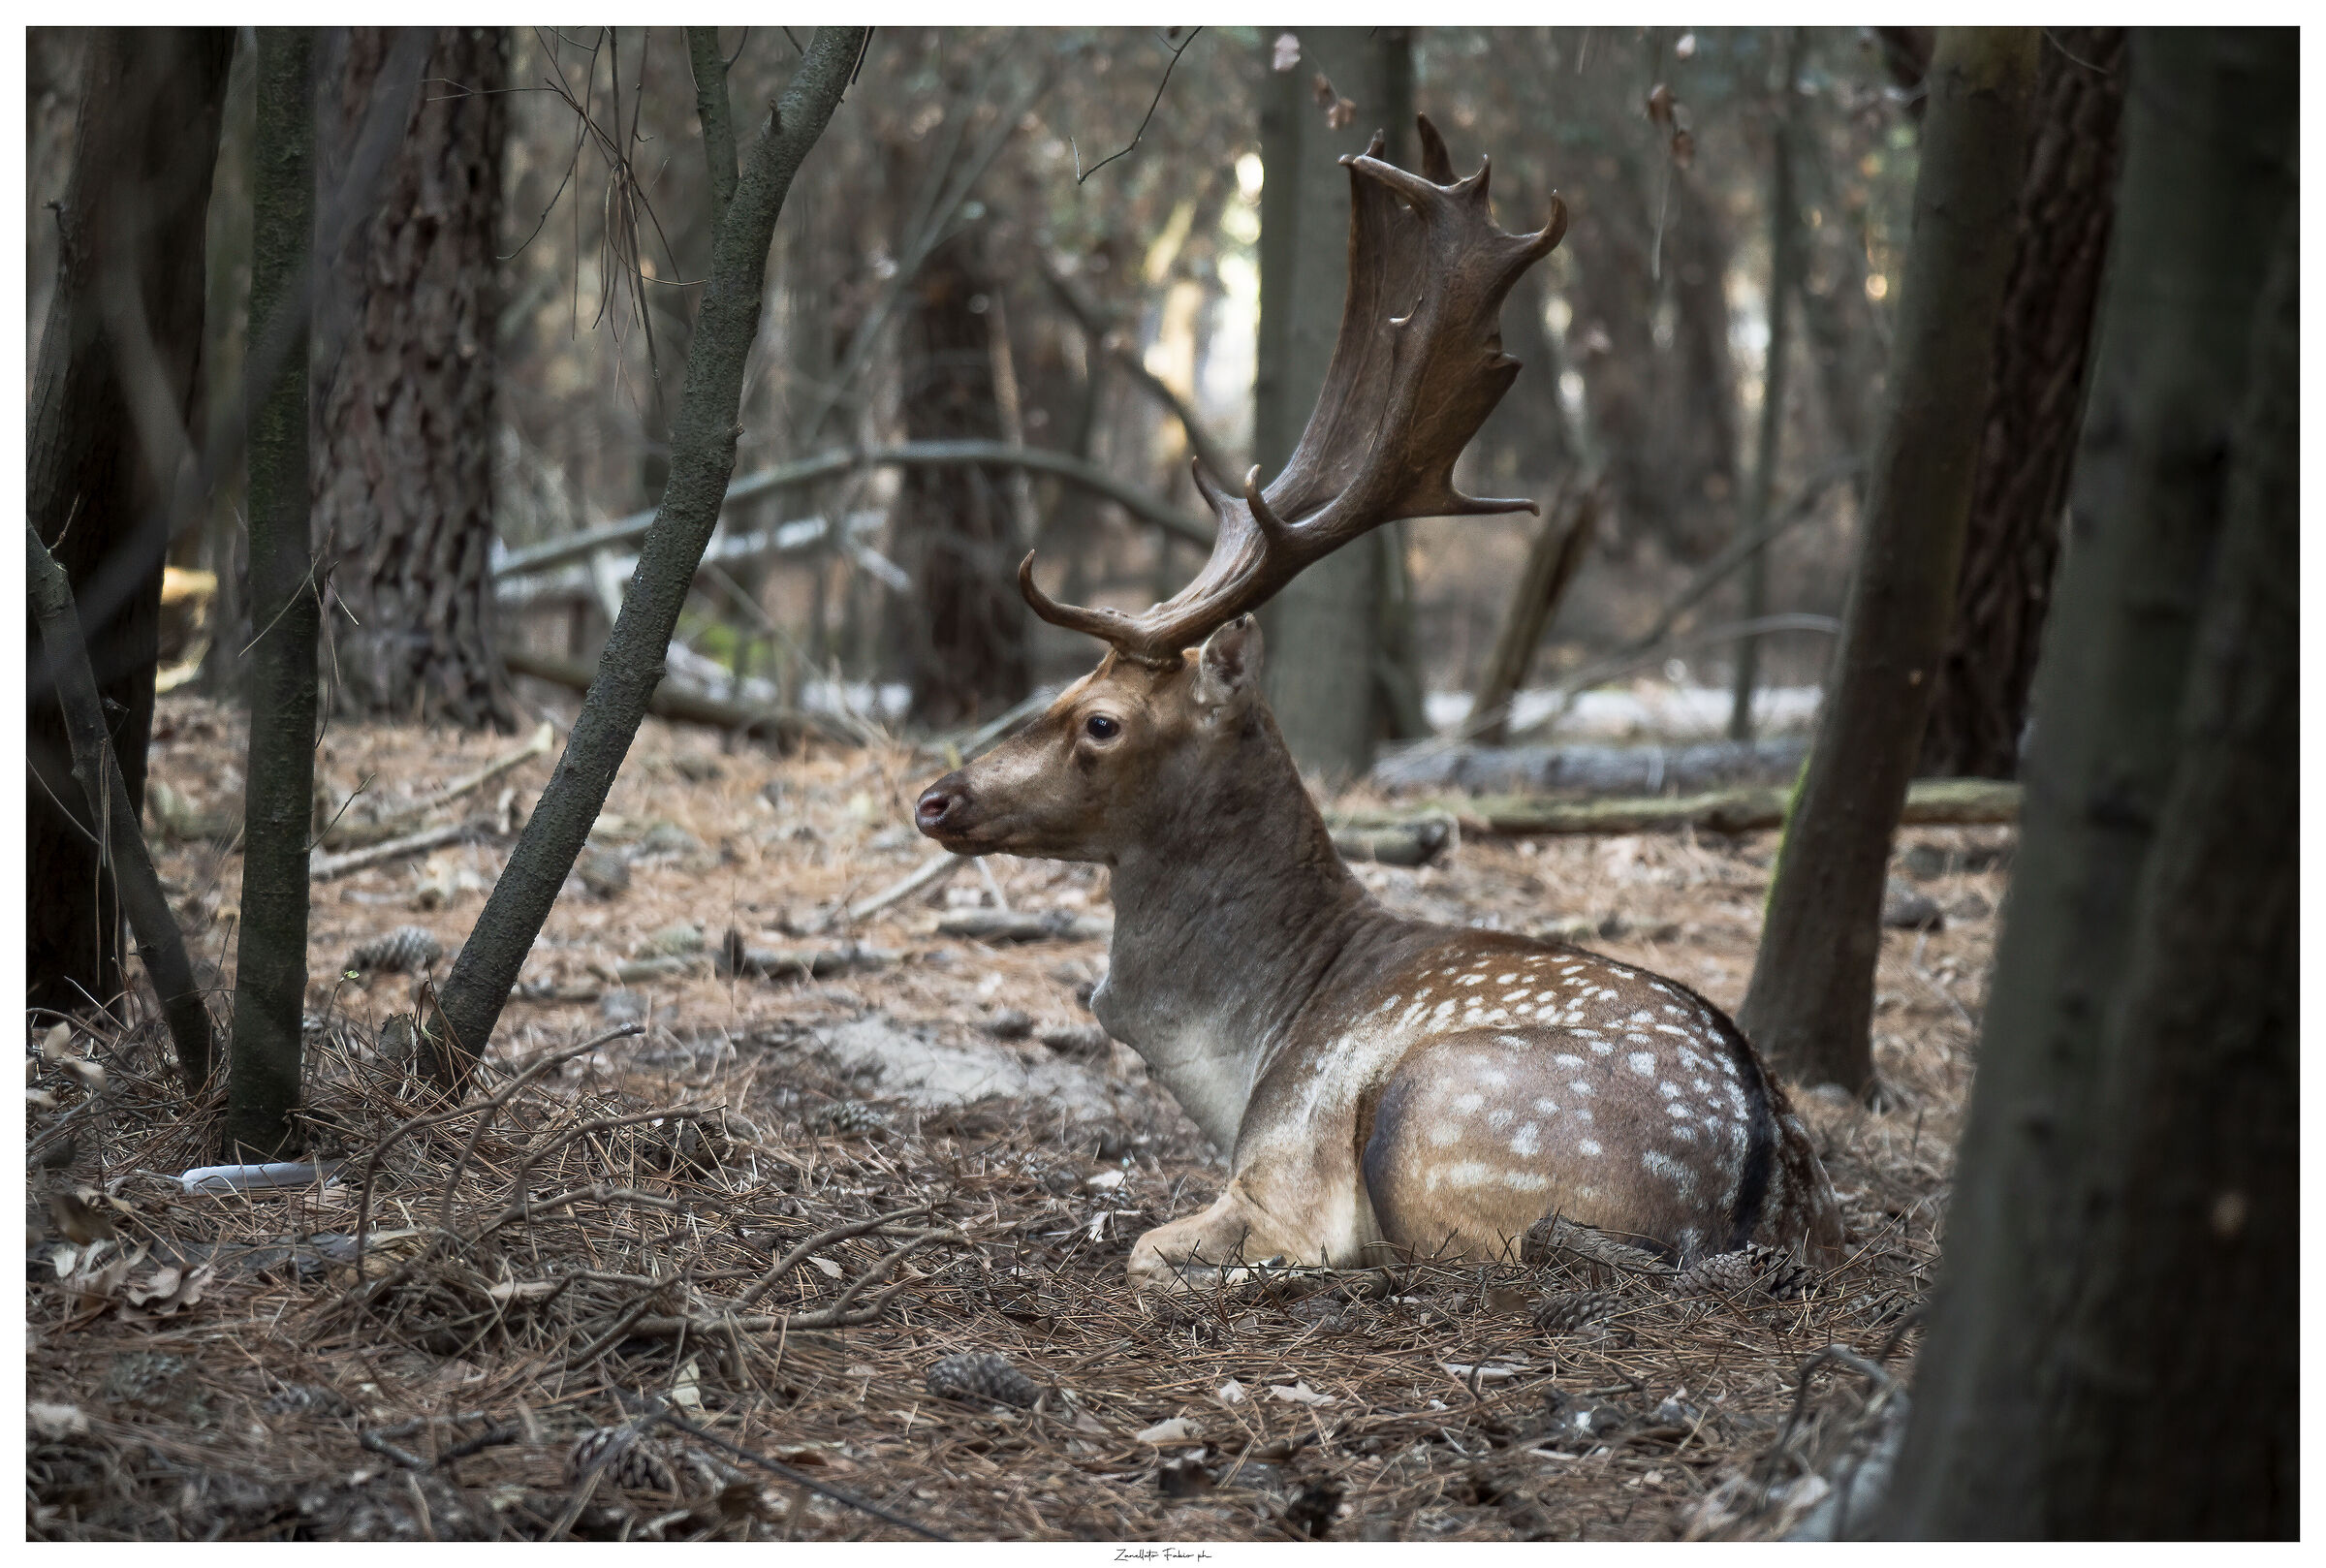 Fallow deer at rest (natural environment no zoo)...